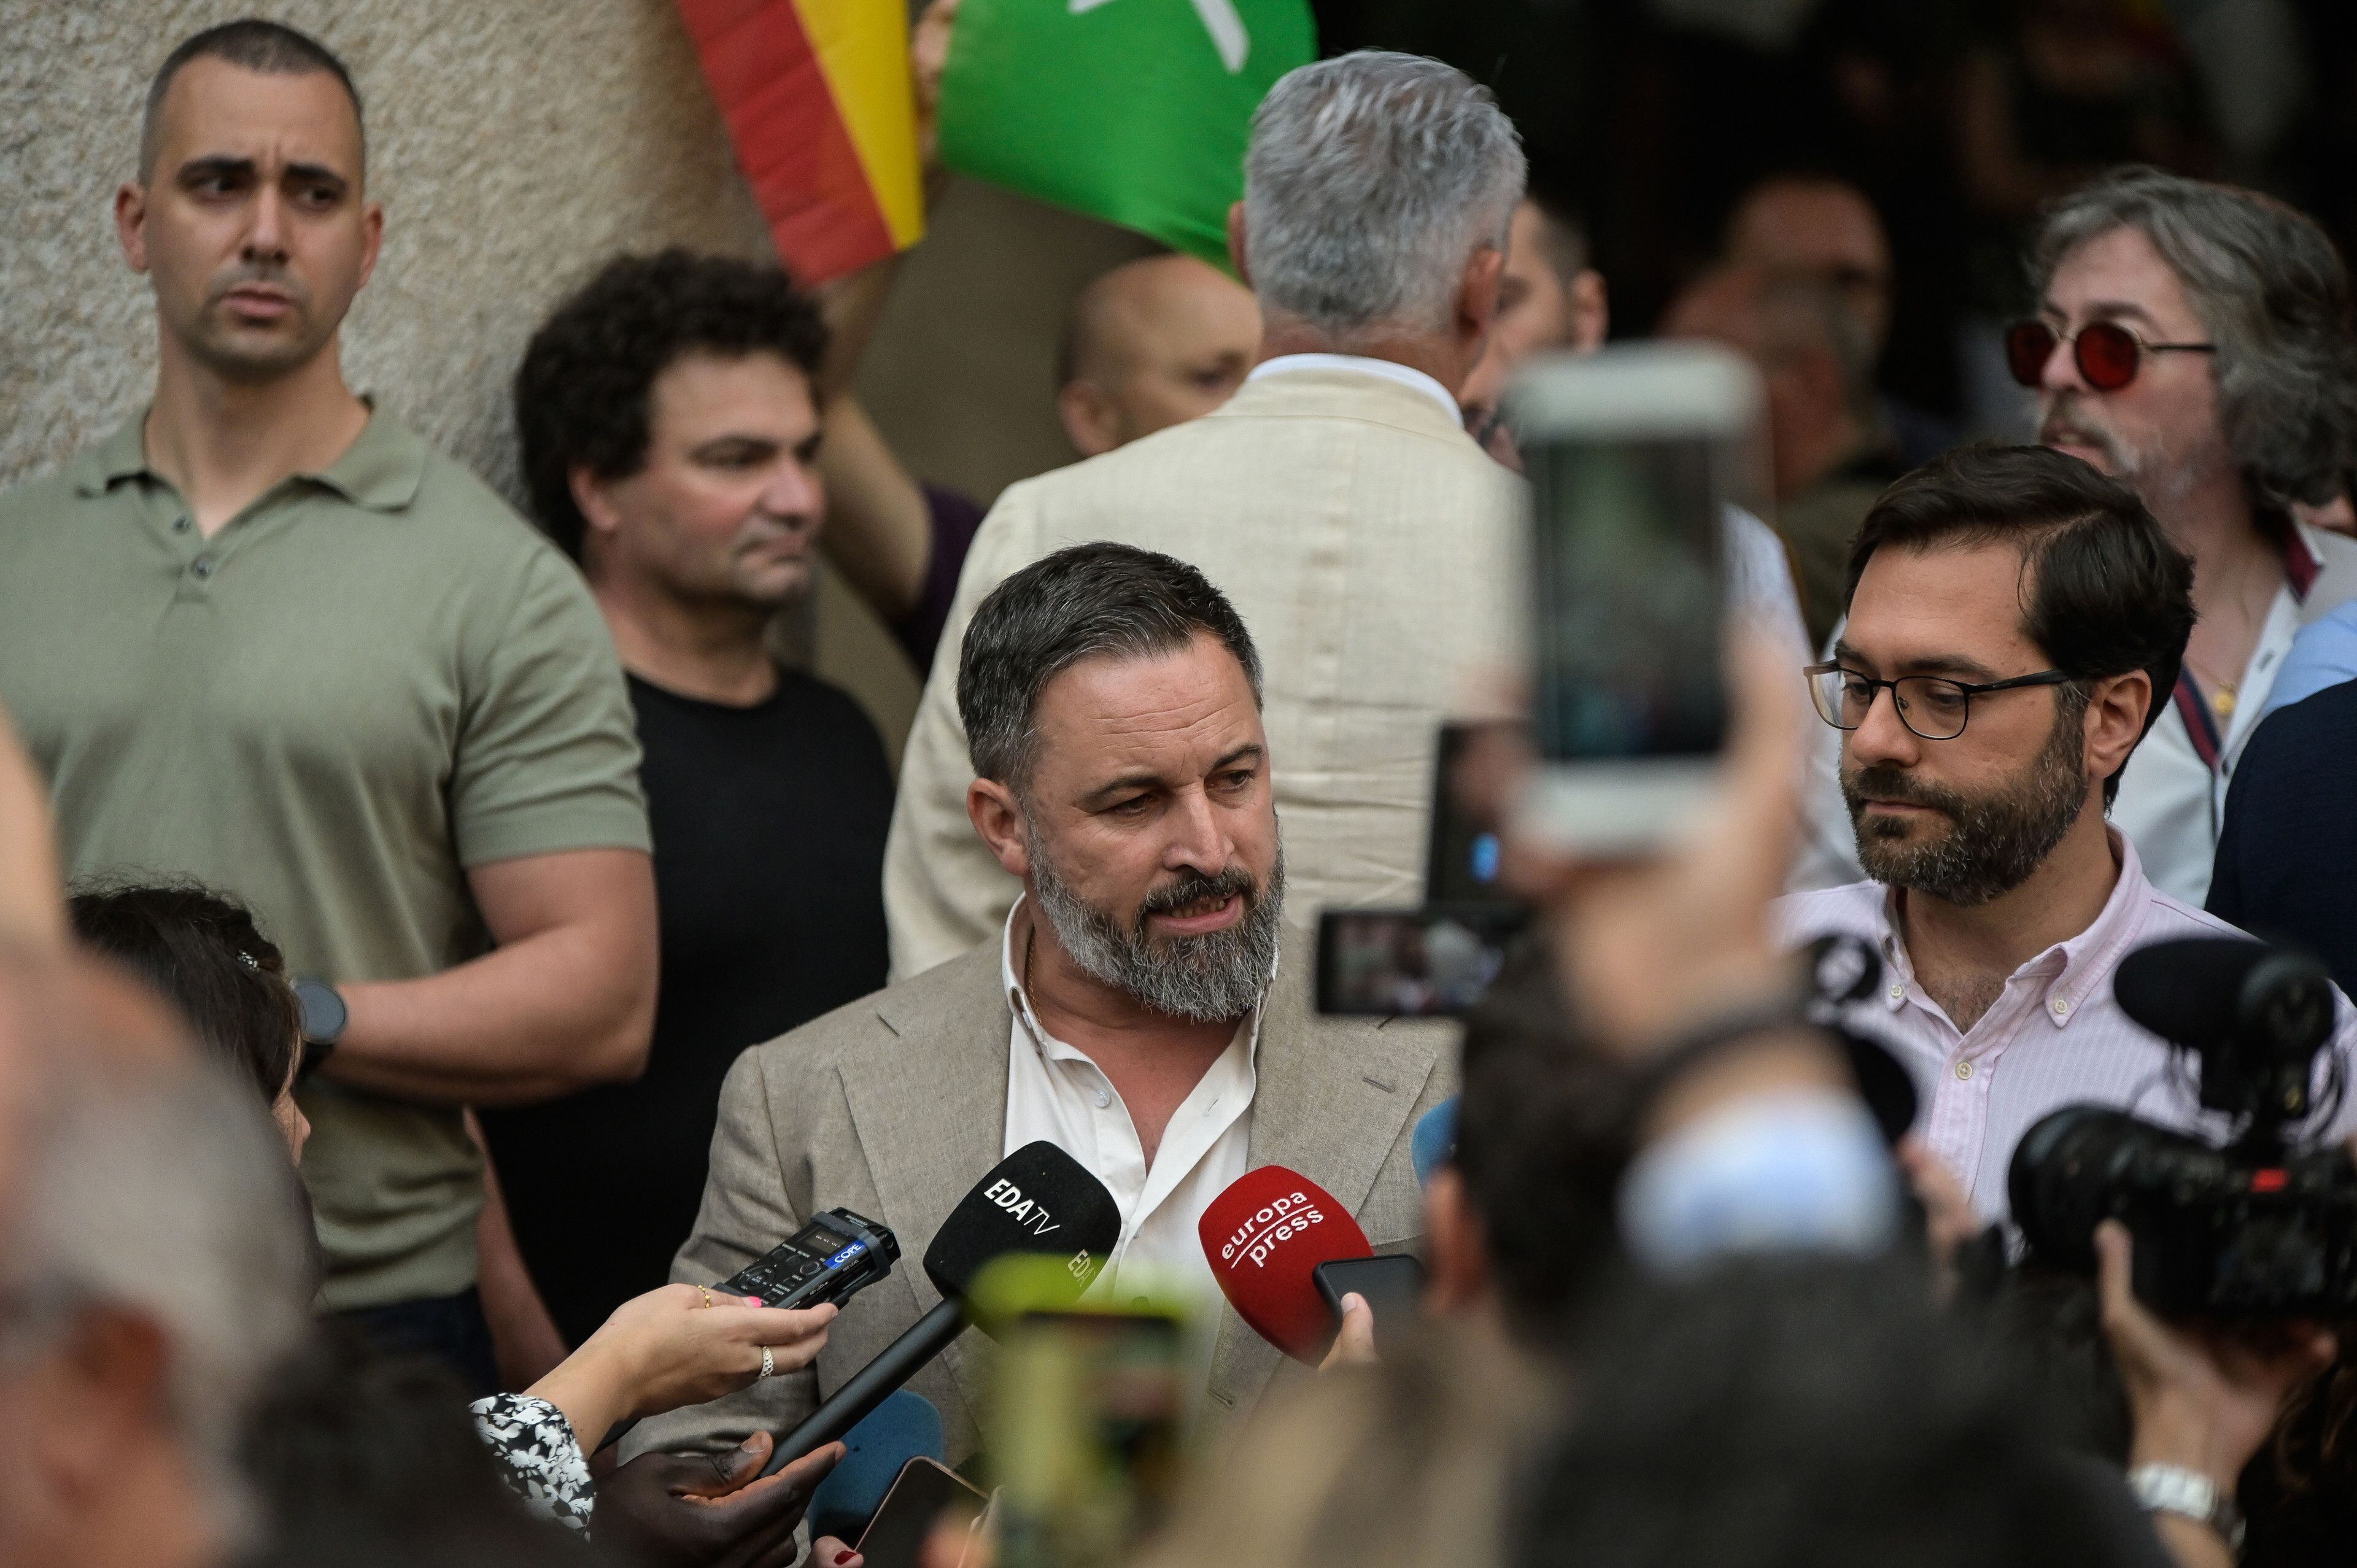 El presidente nacional de Vox y candidato a la presidencia del Gobierno, Santiago Abascal, atiende a los medios en A Coruña, Galicia.